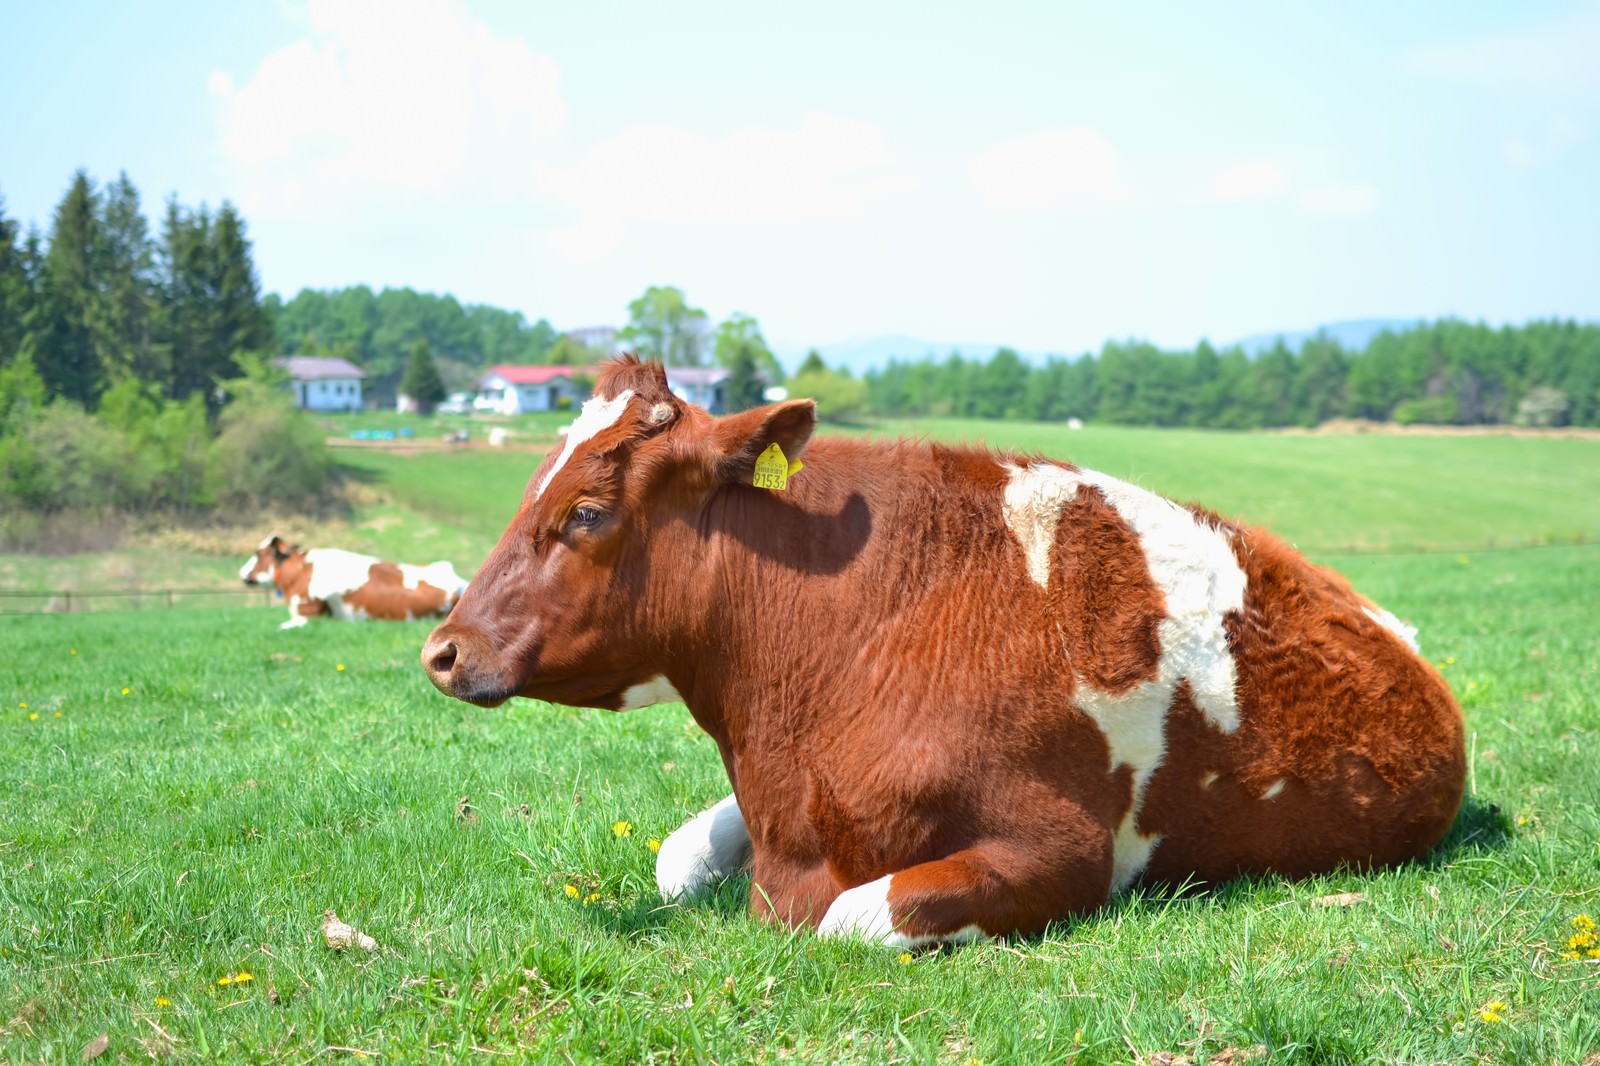 「牧場の牛さん | フリー素材のぱくたそ」の写真